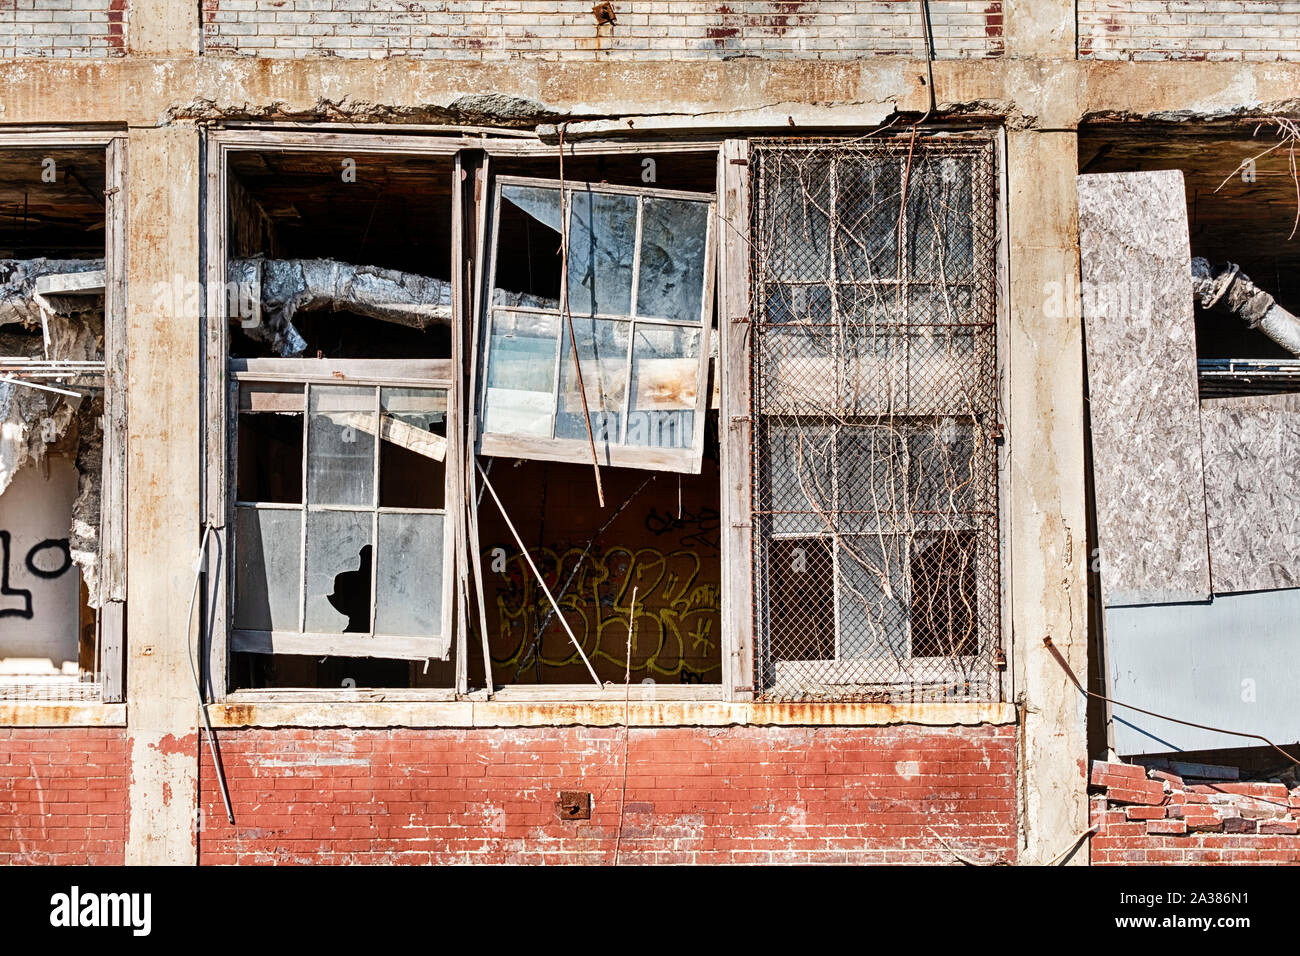 DETROIT, Michigan - Aprile 28, 2019: la rottura di una finestra si apre all'interno della storica Packard Motor Company nella factory di Detroit. Foto Stock